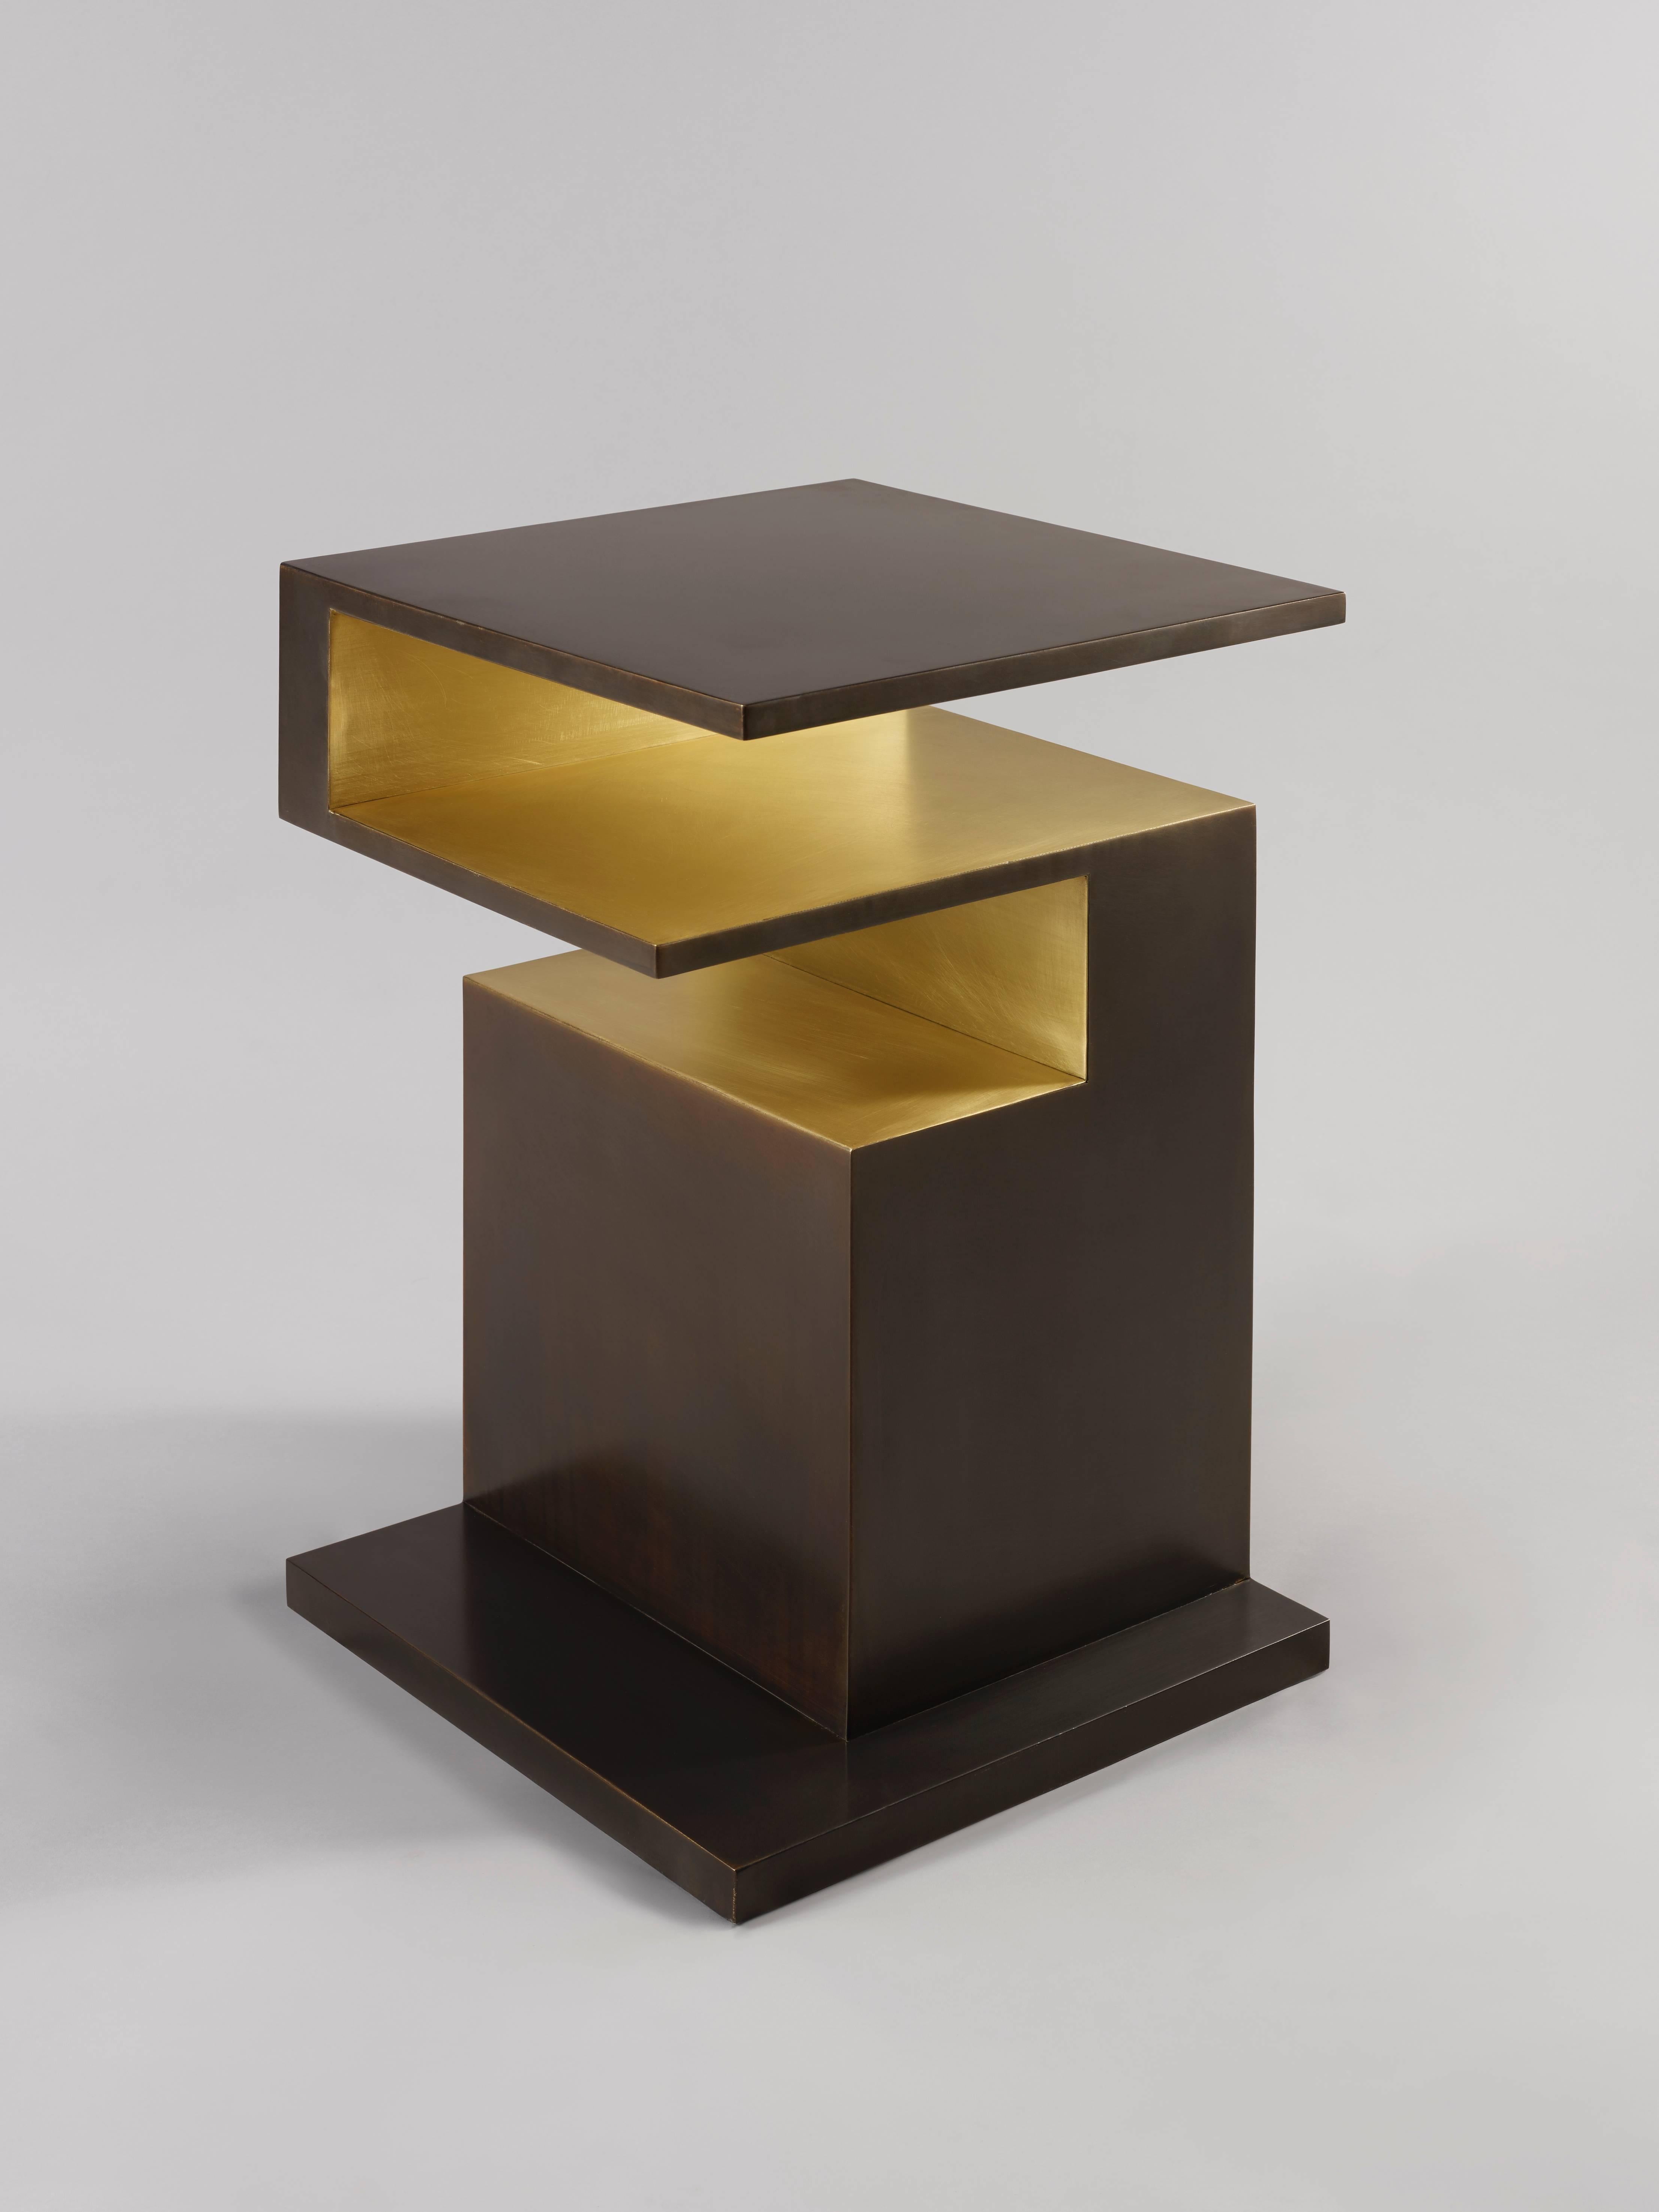 La table d'appoint 'XiangSheng II' est une pièce de collection qui combine une surface en bronze brossé de couleur champagne et un bronze oxydé à la patine brune intense. Cette table élégante fait partie de la collection de meubles 